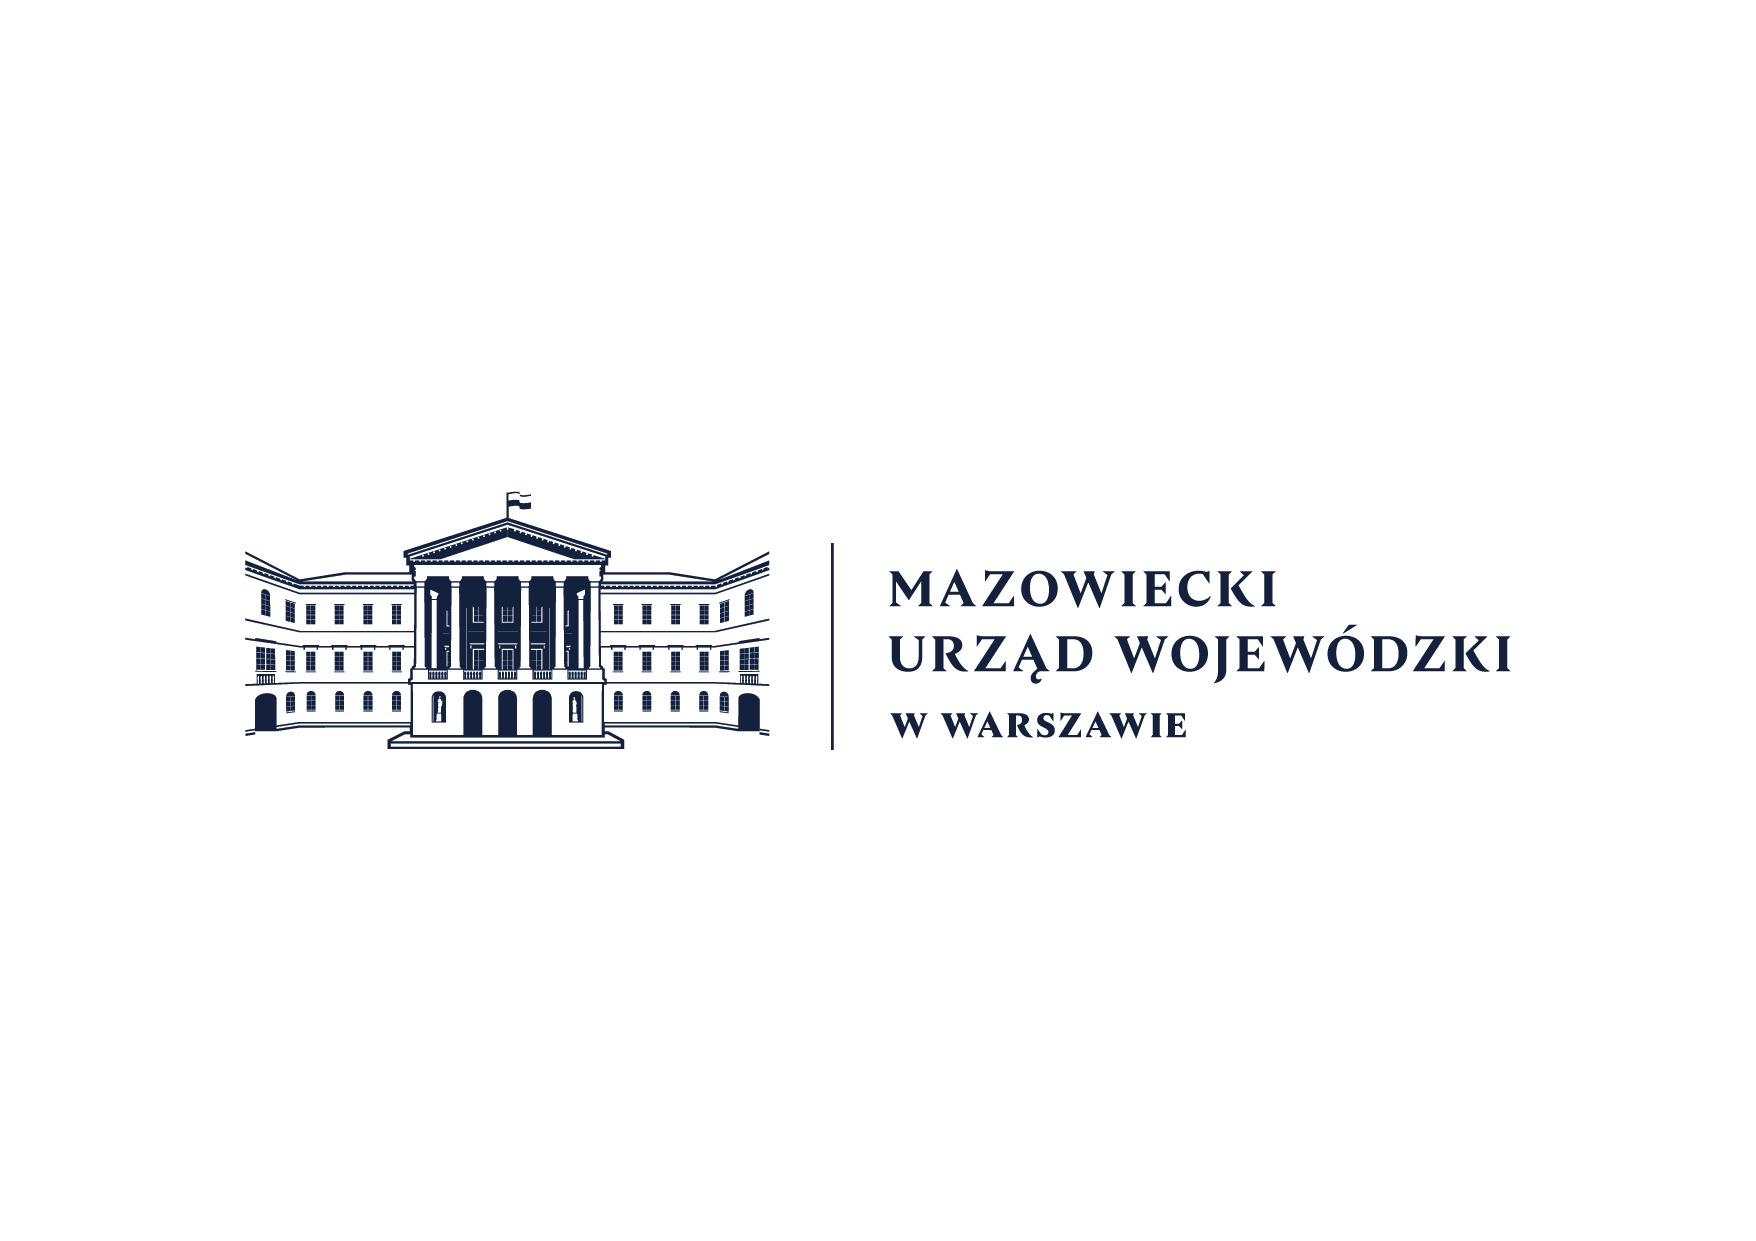 Dofinansowanie Mazowieckiego Urzędu Wojewódzkiego – projekt dla dzieci w warszawskim domu